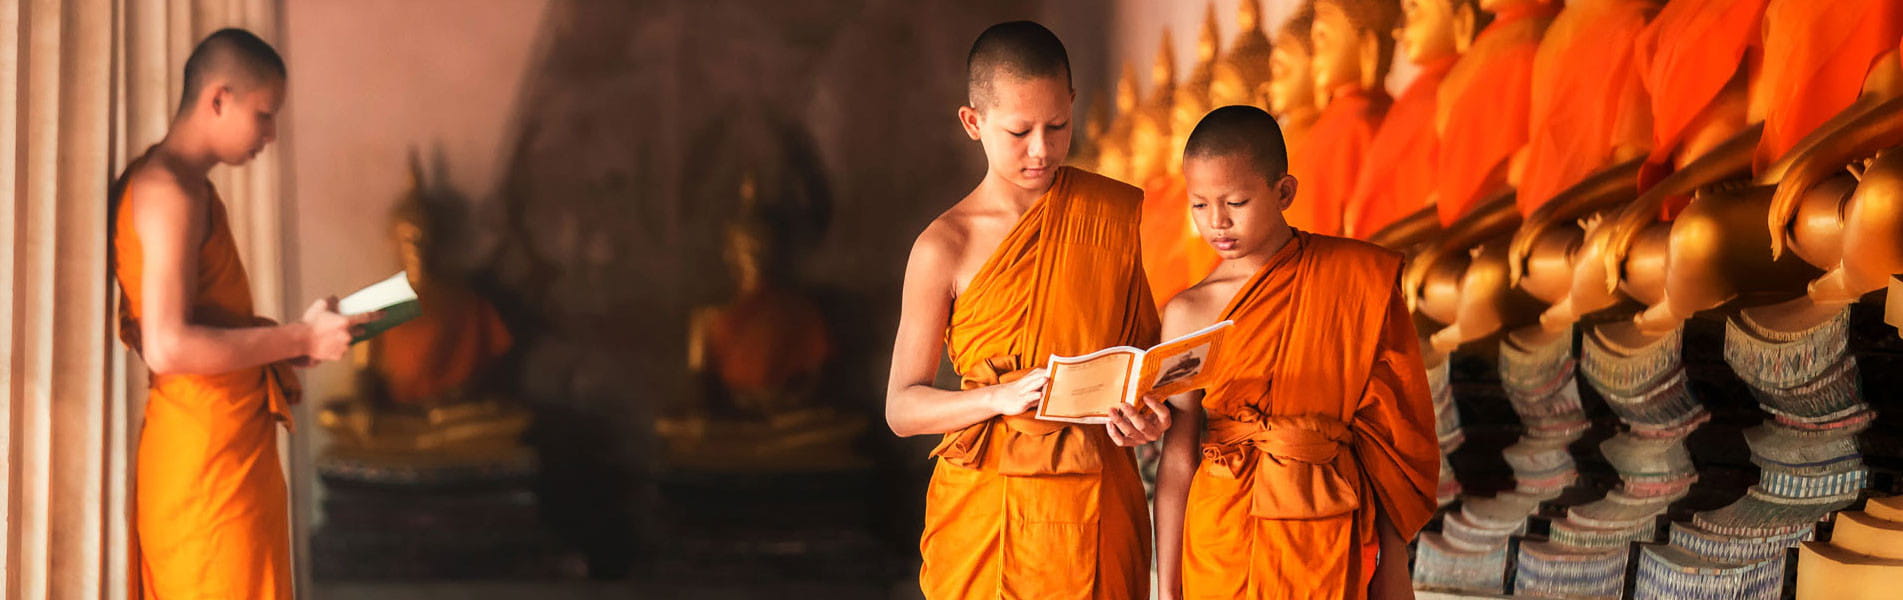 Thailand Monks